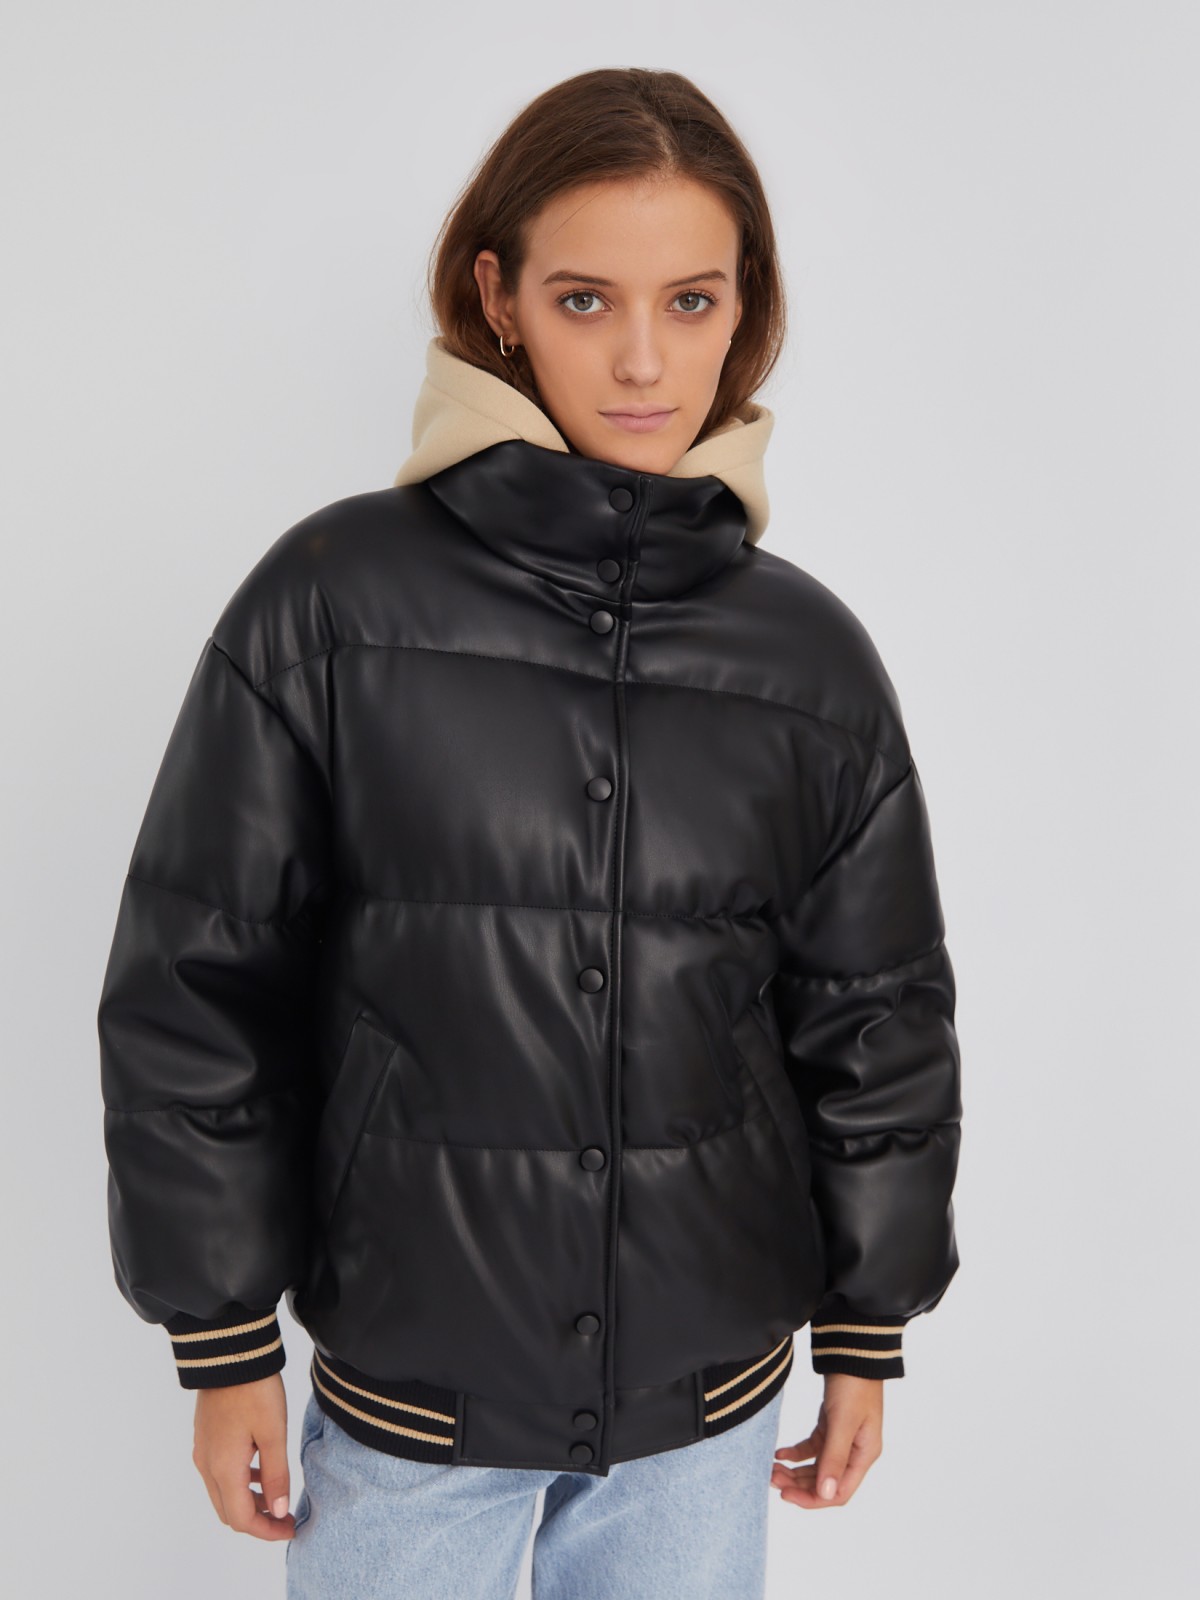 Тёплая куртка-бомбер из экокожи с воротником-стойкой и съёмным трикотажным капюшоном zolla 02334510L194, цвет черный, размер XS - фото 3